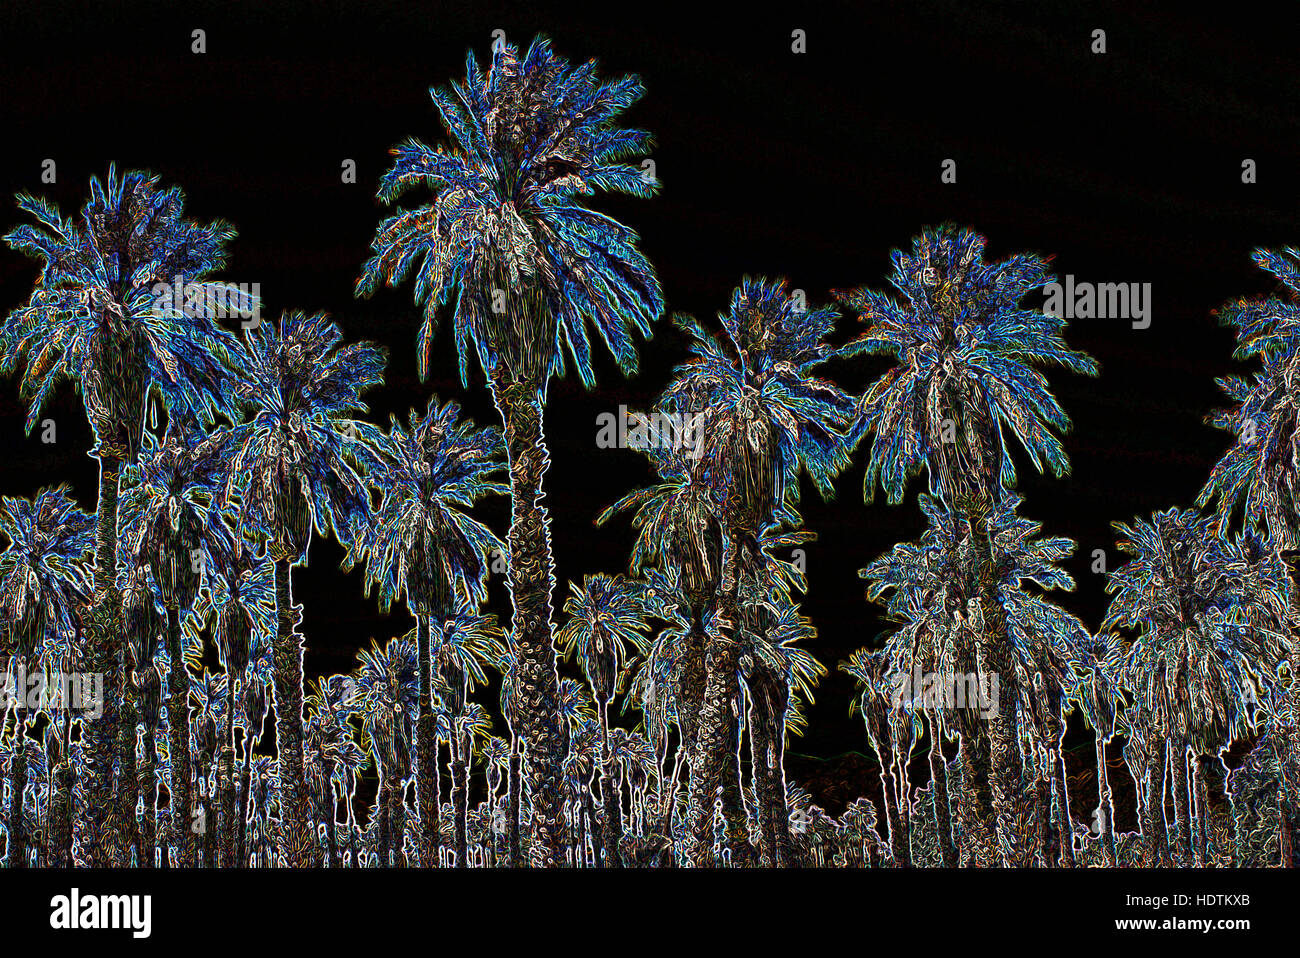 Alberi di palma (Arecaceae o Palmae) - manipolato digitalmente immagine con bordi incandescente, Foresta astratta su sfondo nero Foto Stock